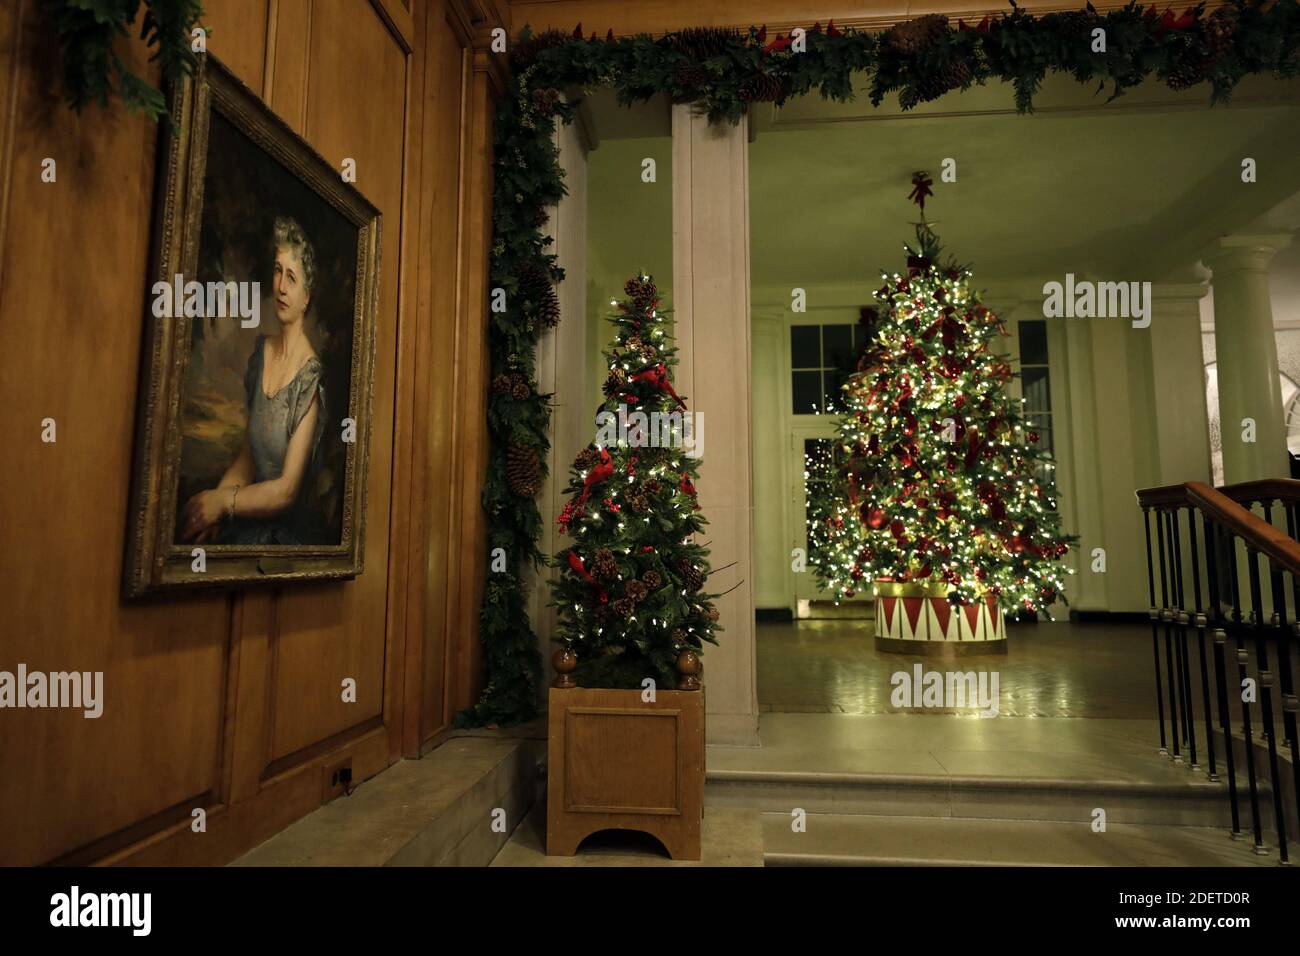 Der Stammbaum der Goldstern-Familie ist im Ostflügel des Weißen Hauses während einer Überprüfung der Weihnachtsdekorationen durch US-First Lady Melania Trump in Washington am 2. Dezember 2019 zu sehen. Foto von Yuri Gripas/ABACAPRESS.COM Stockfoto